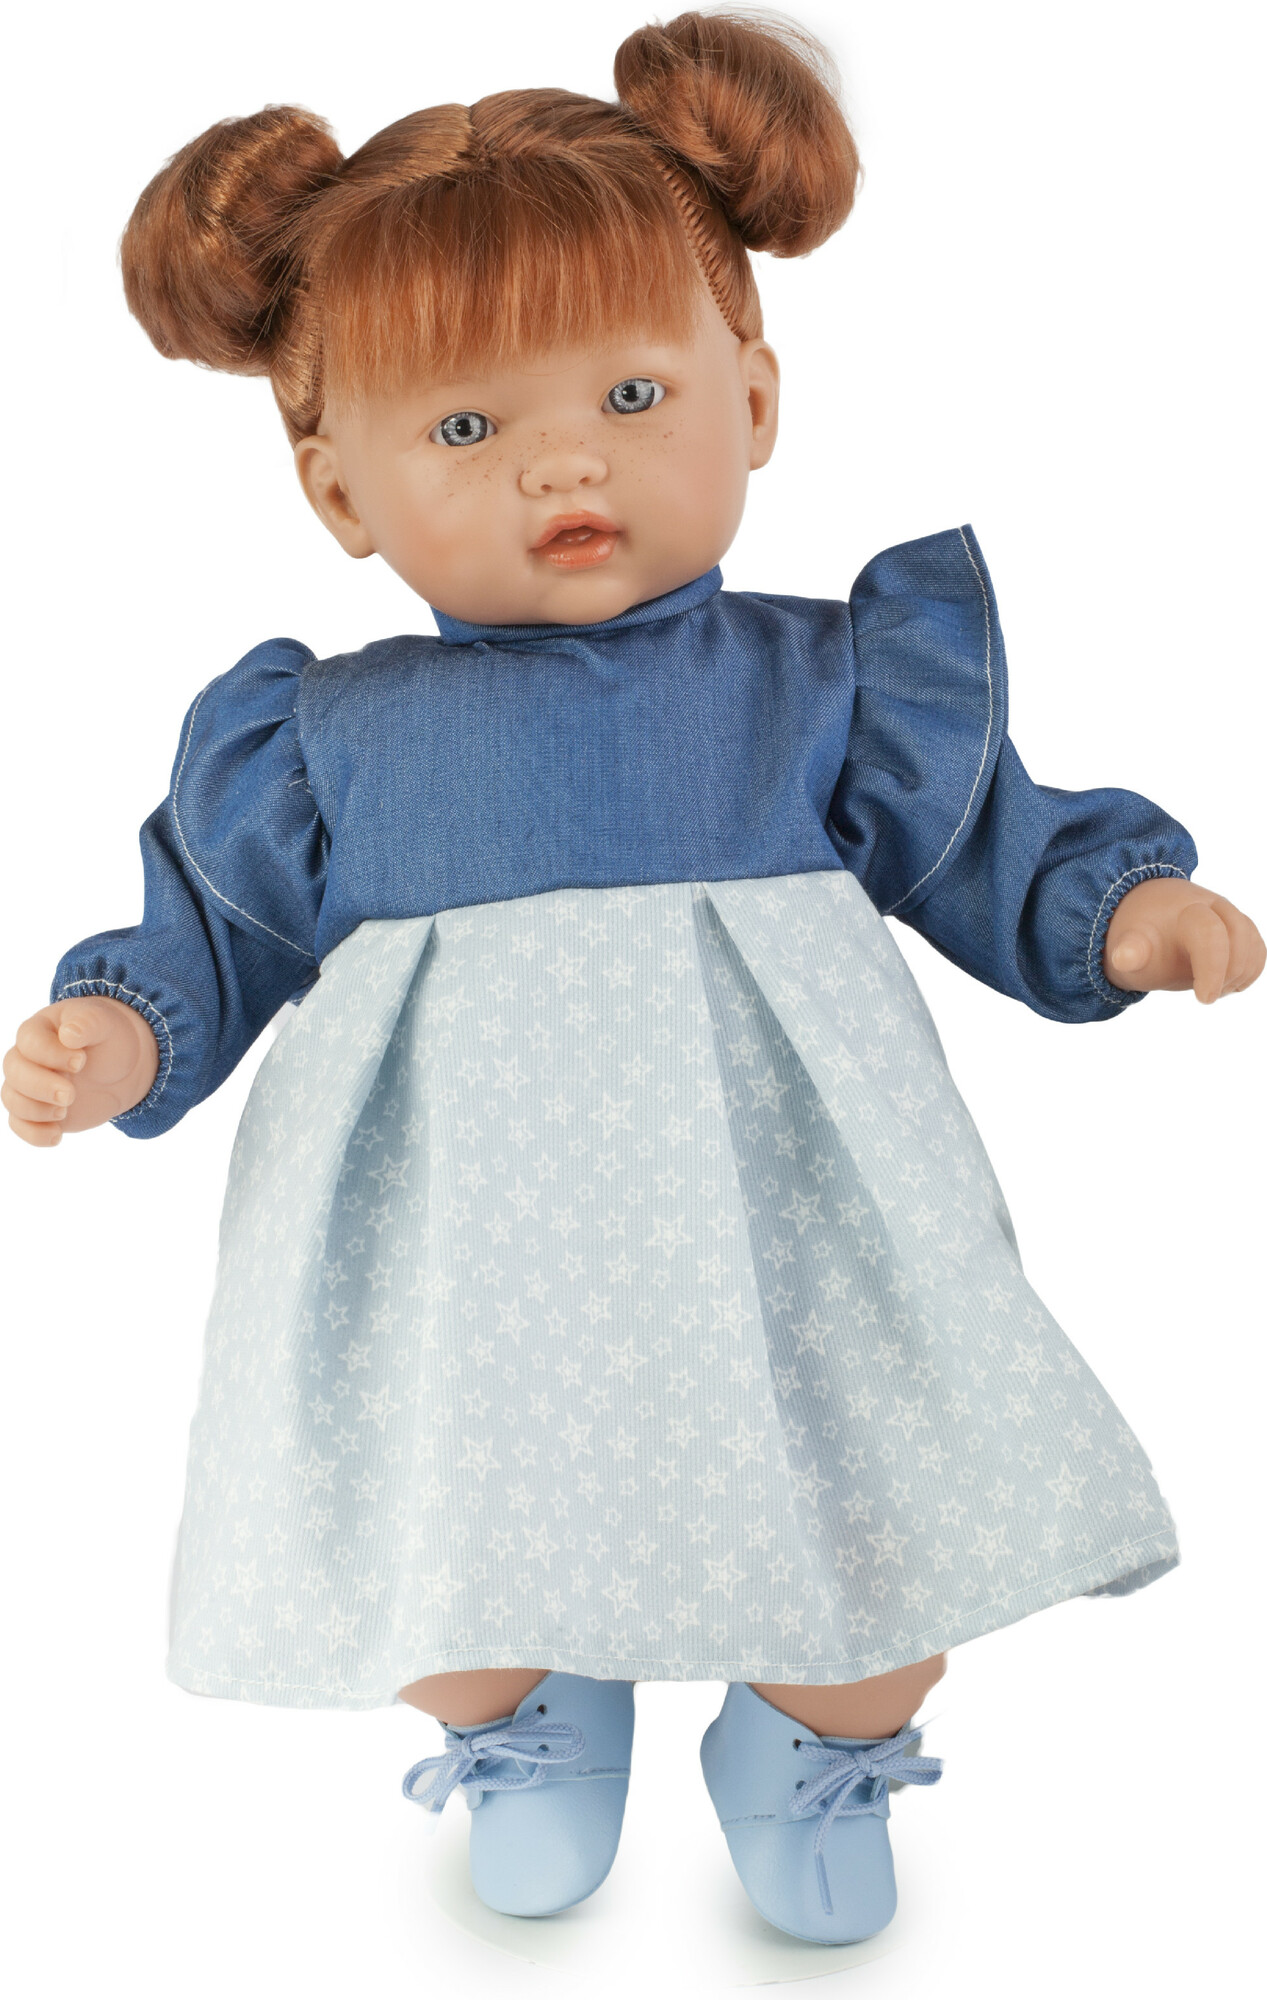 TYBER Paula zrzka v modrém plačící panenka s dudlíkem, vel. S 45 cm